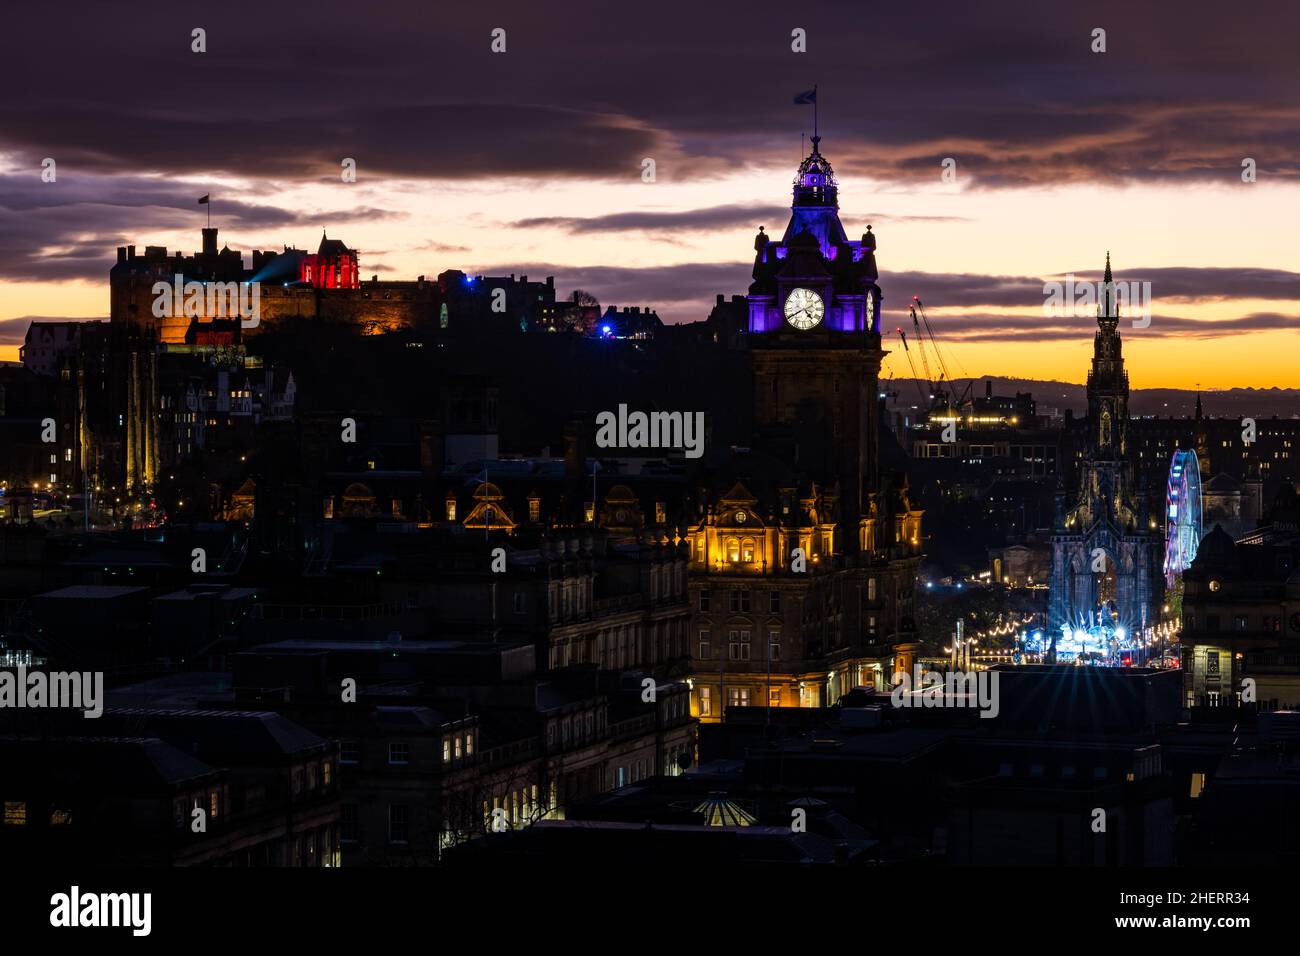 Château d'Edimbourg et tour d'horloge Balmoral illuminés la nuit avec coucher de soleil coloré, Edimbourg, Ecosse, Royaume-Uni Banque D'Images